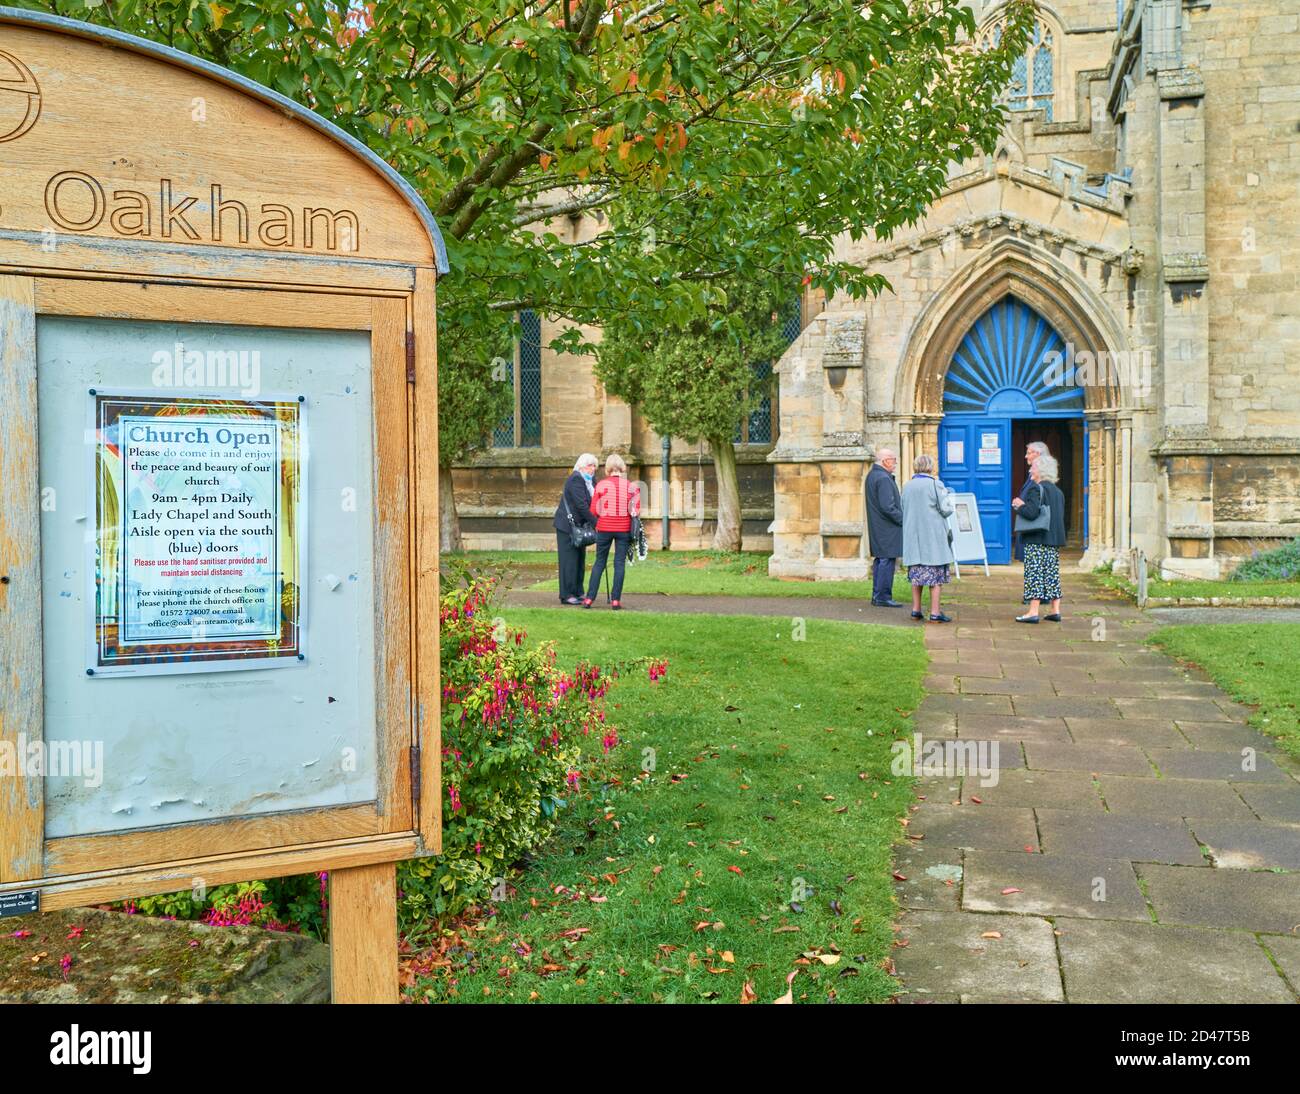 Trauernde warten vor der Allerheiligen-Pfarrkirche in Oakham, Rutland, England, auf einen Trauergottesdienst während der Coronavirus-Epidemie, Oktober 2020. Stockfoto